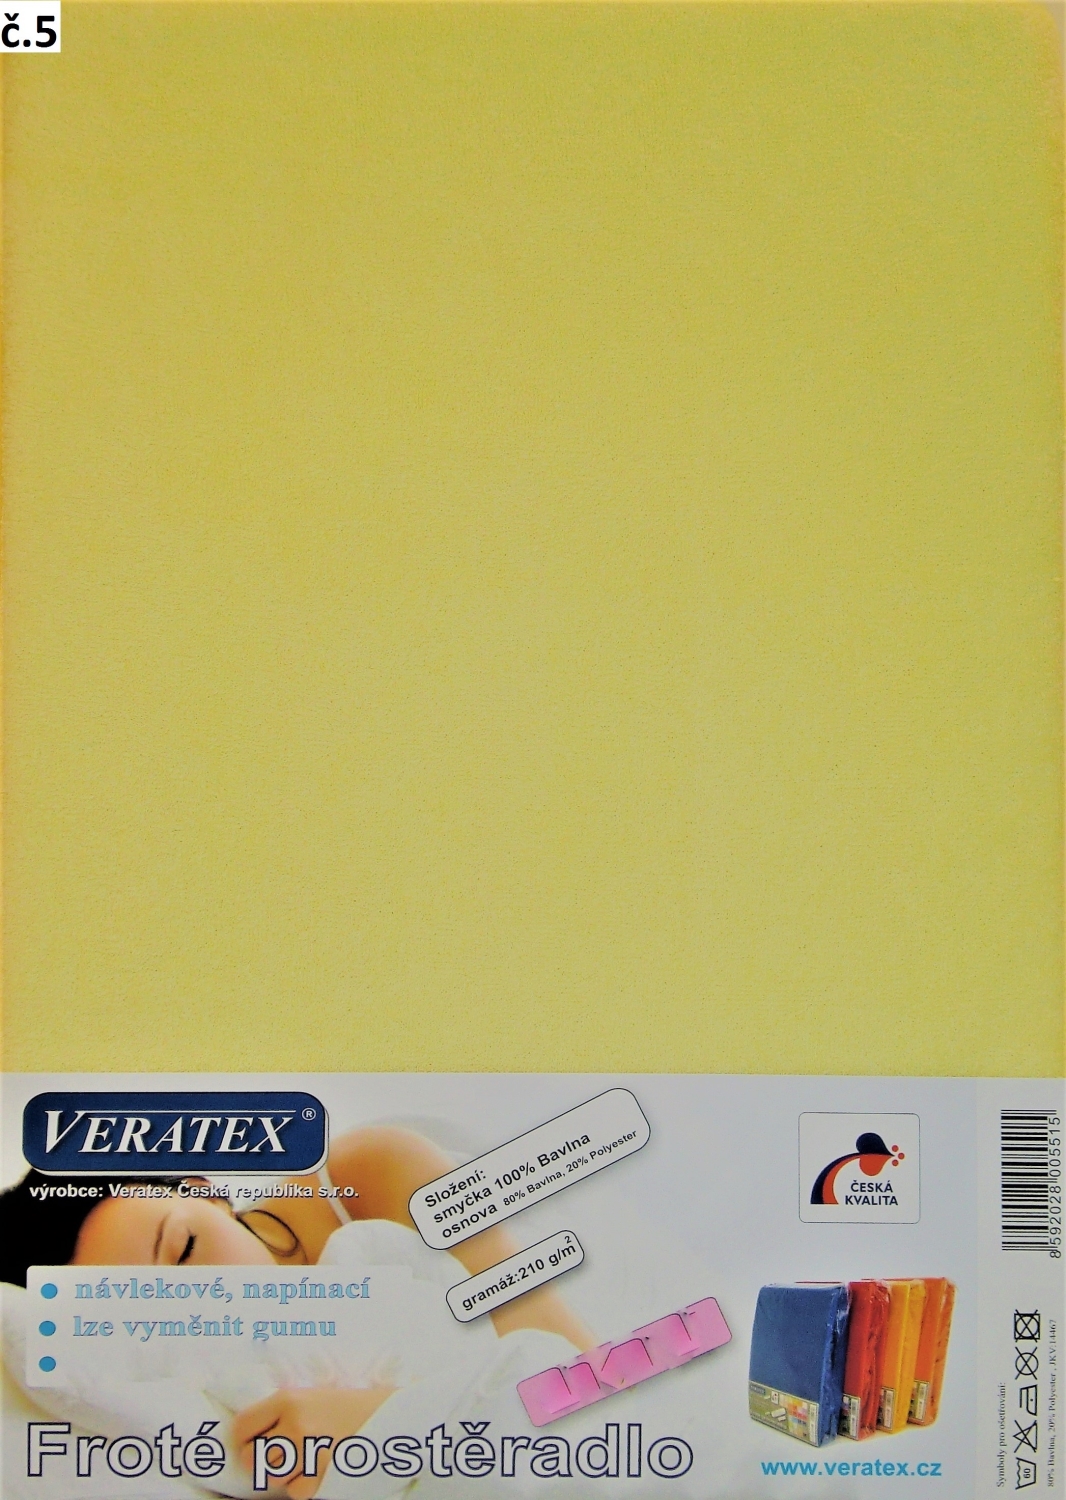 Veratex Froté prostěradlo 160x200 cm (č.5- sv.žlutá)